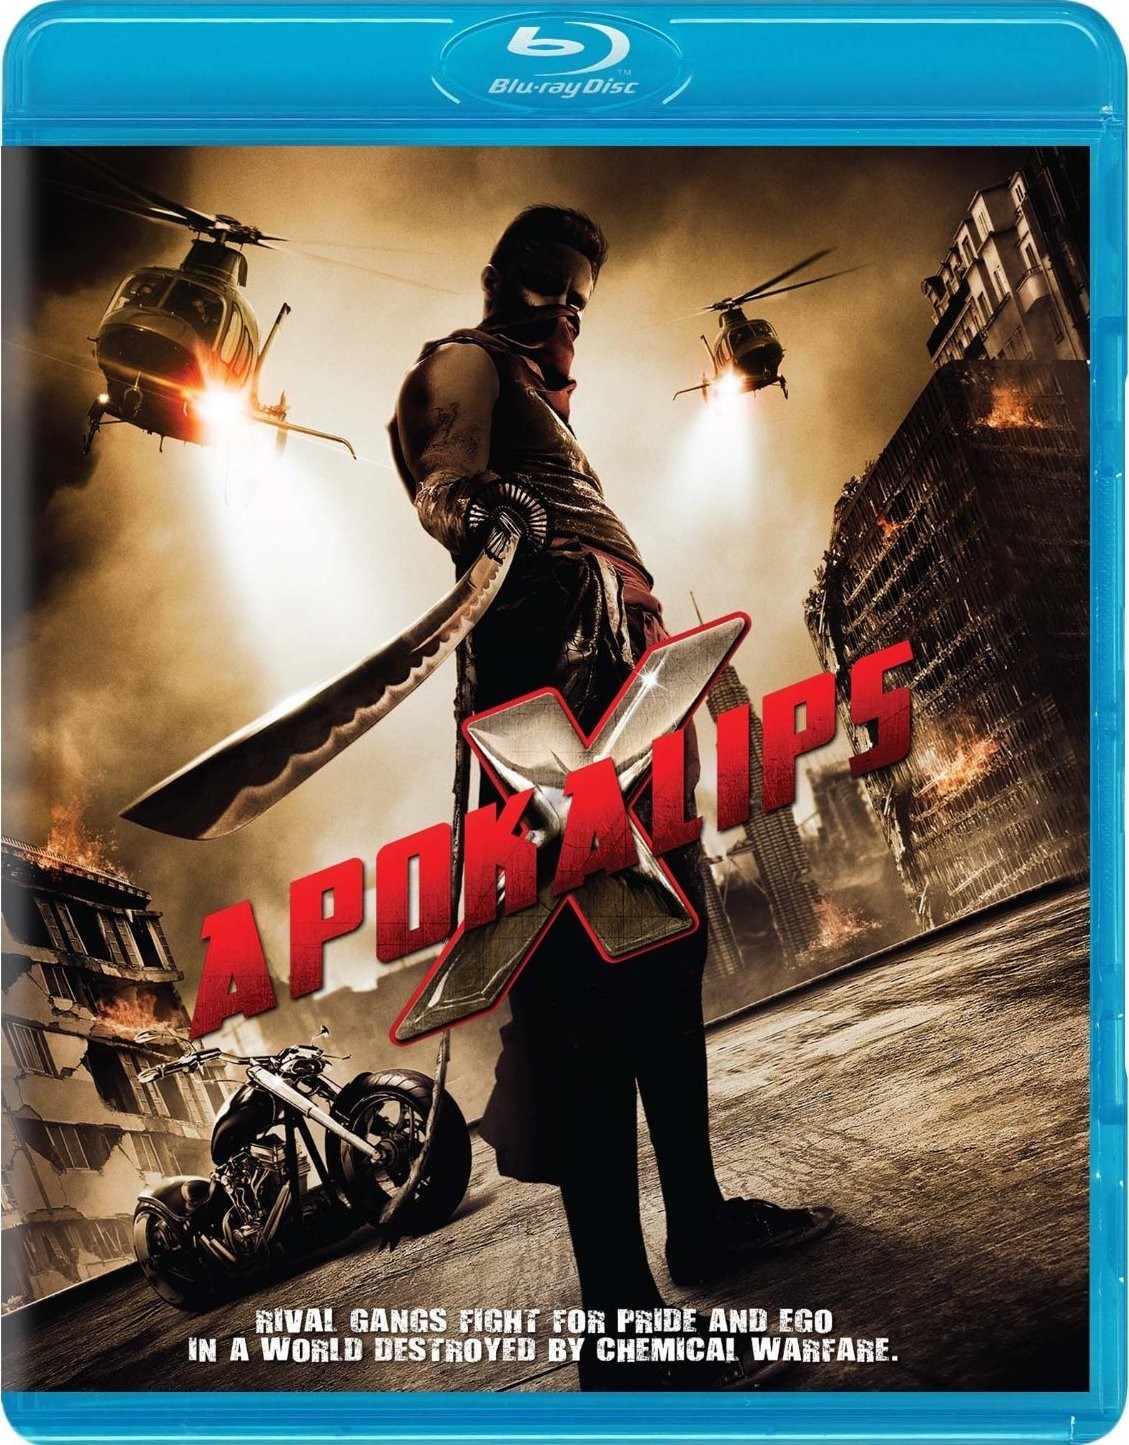  末日天启战 Apokalips X (2014) 101-002 